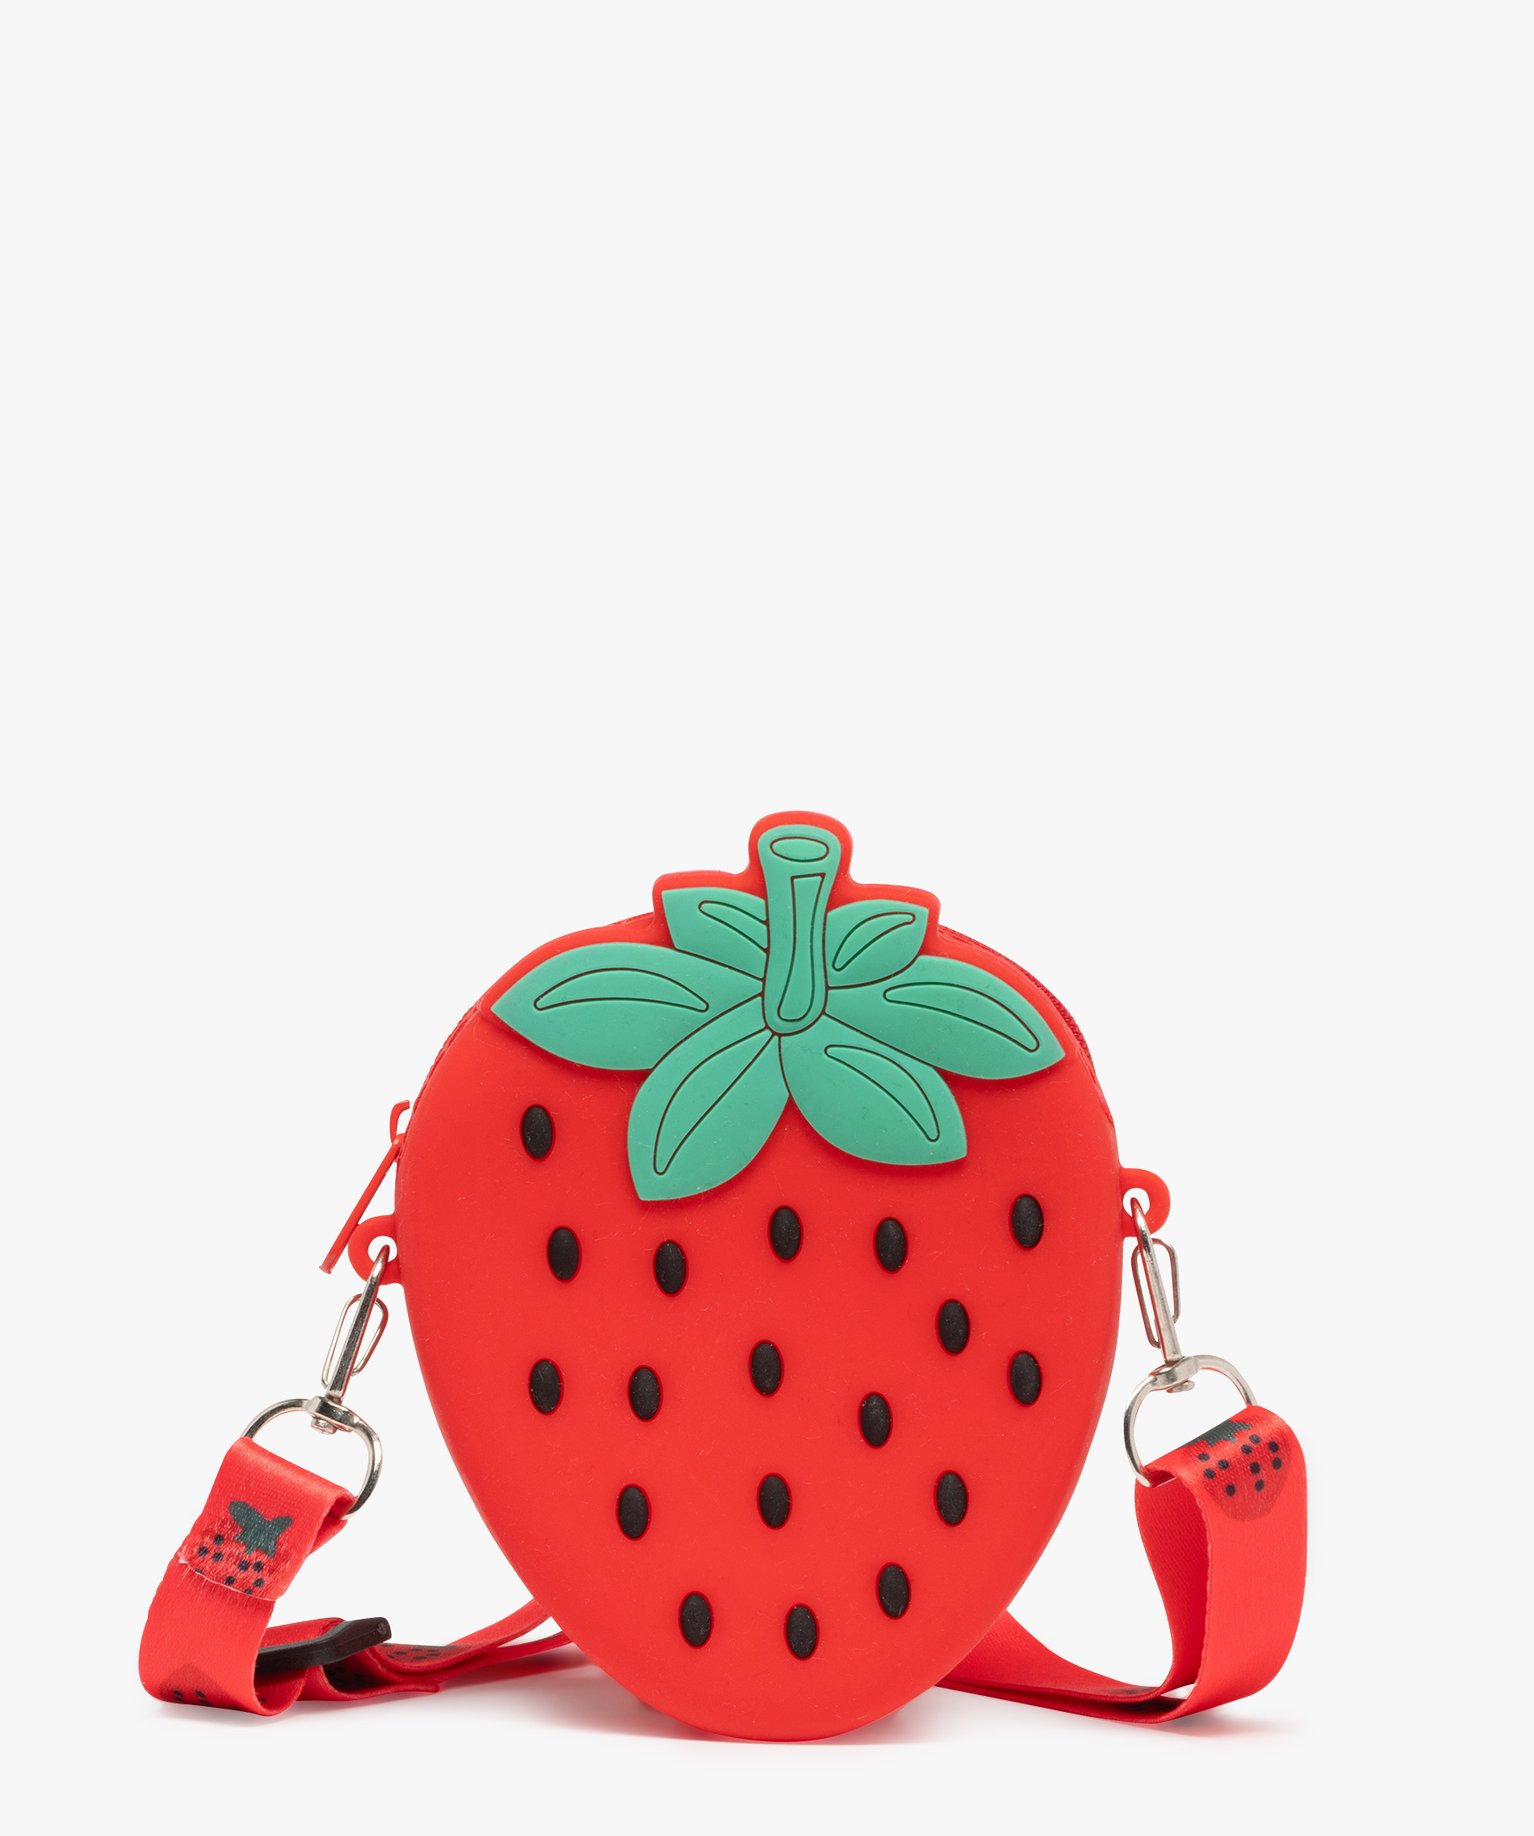 Pochette porte-clés enfant en forme de fraise - TU - rouge - GEMO